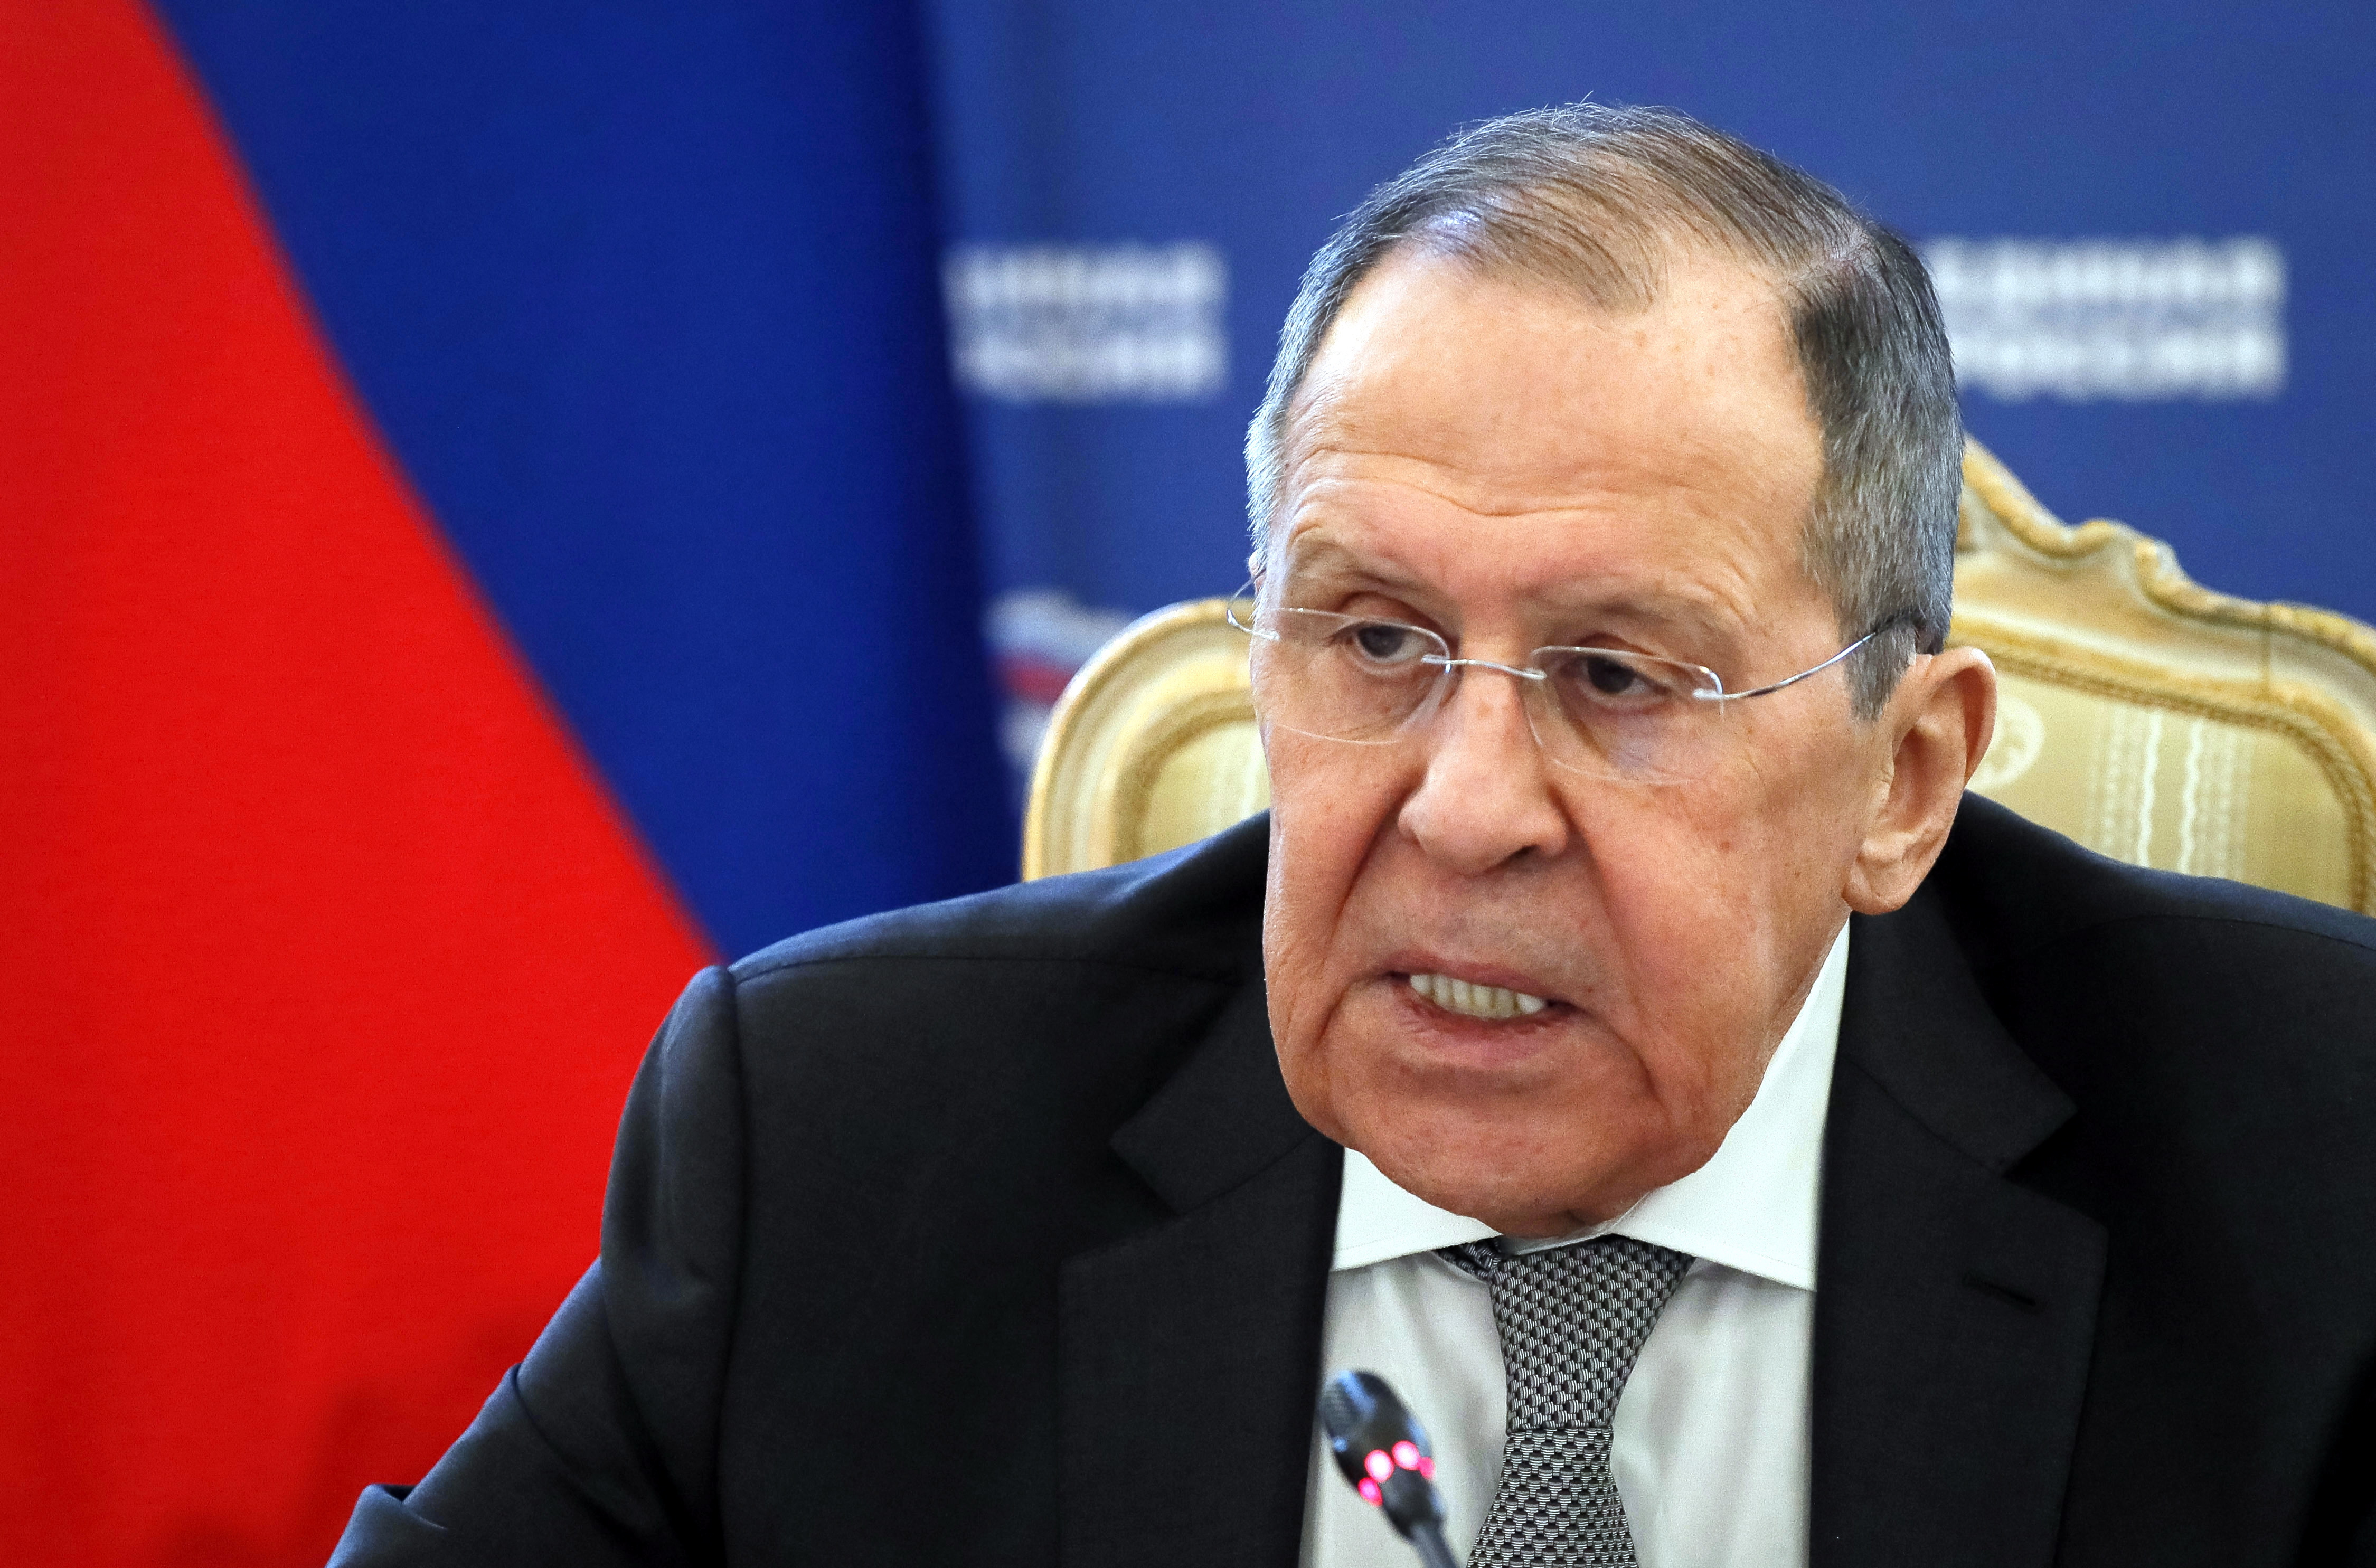 Mientras Putin habla de negociar, Lavrov lanza terrible amenaza a Ucrania para que entregue territorio